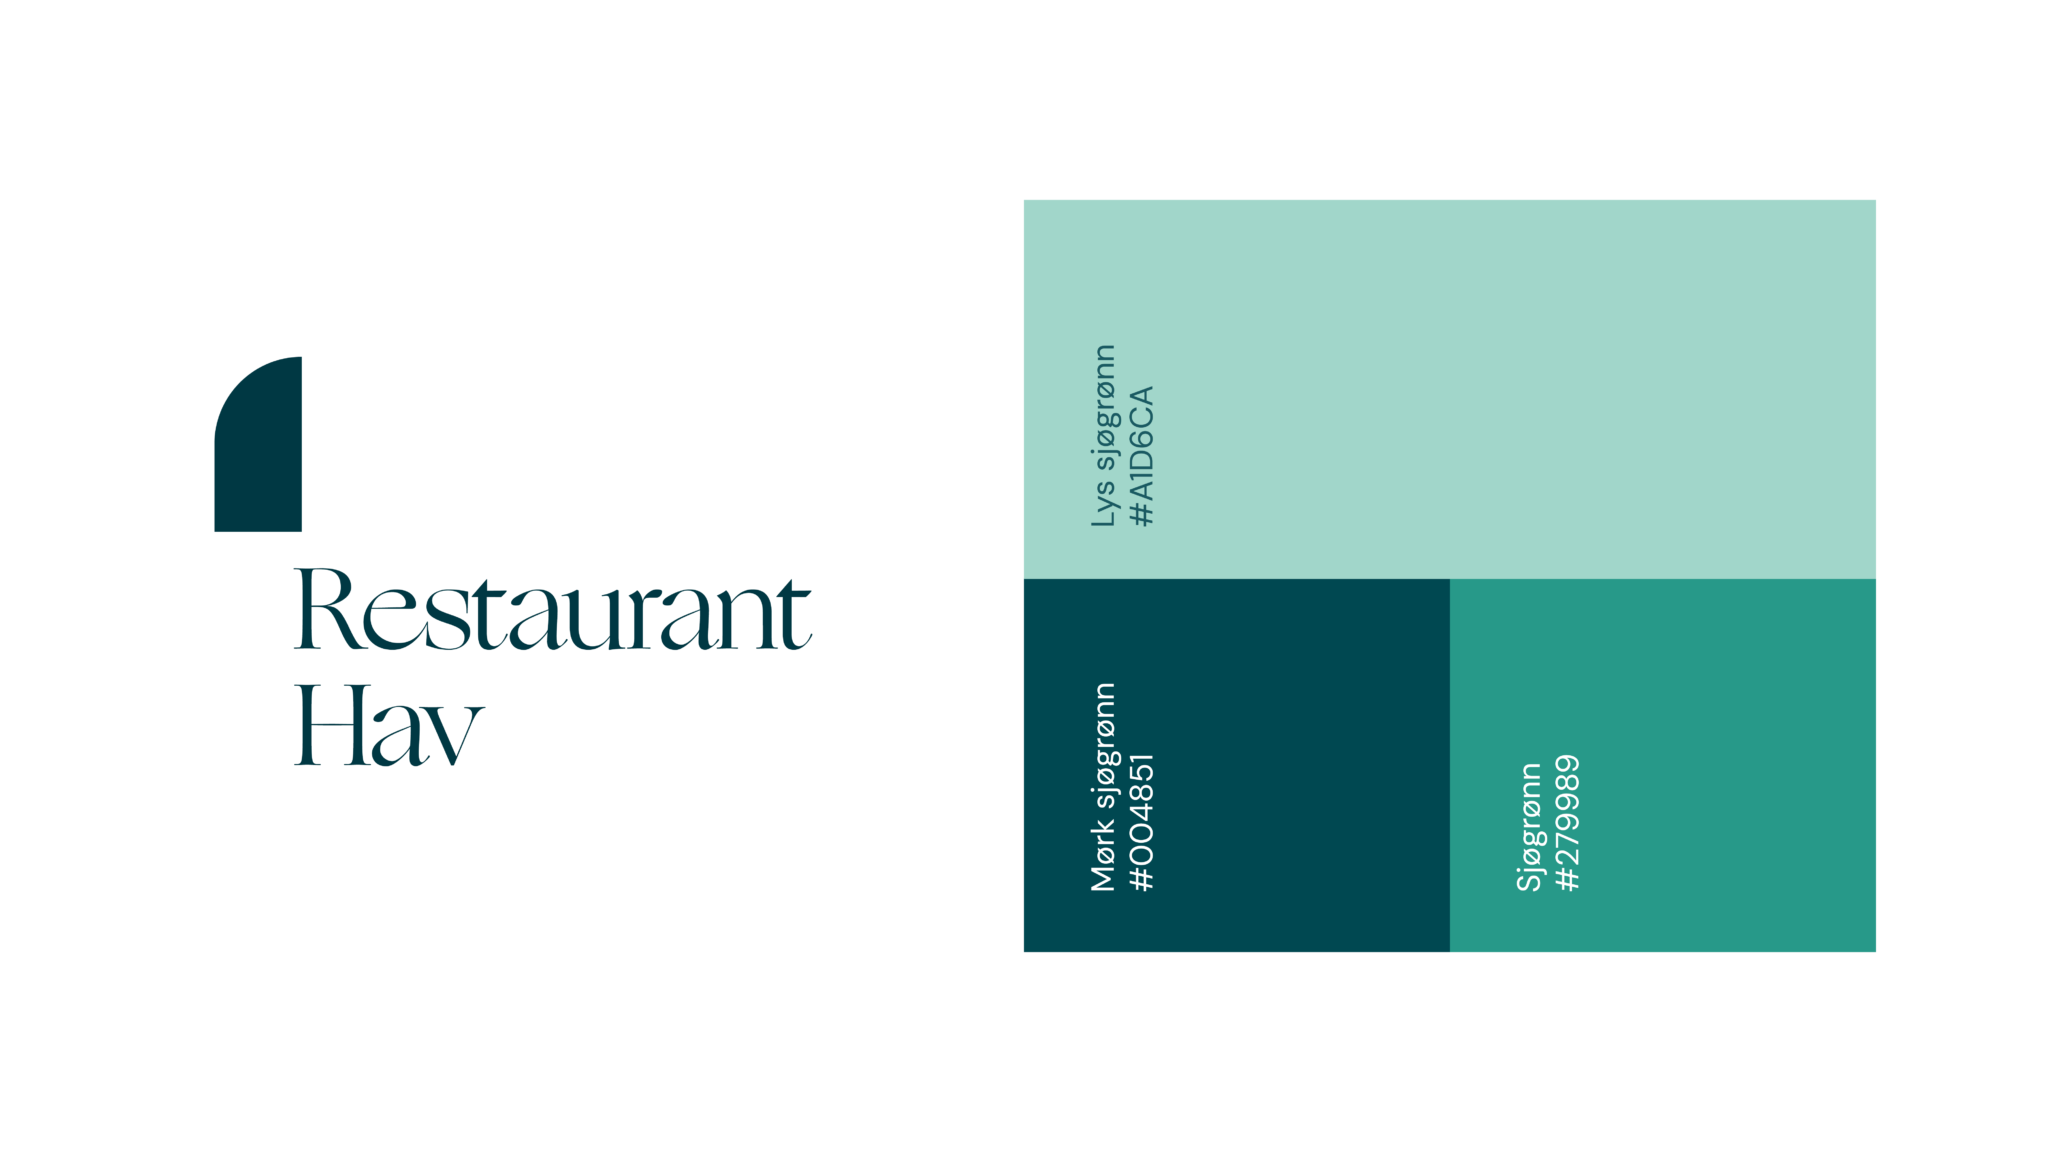 Restaurant Hav sin logo i sjøgrønn farge, og Restaurant Hav sine profilfarger til høyre. De fargene er vist i firkanter med fargene lys sjøgrønn, sjøgrønn og mørk sjøgrønn.